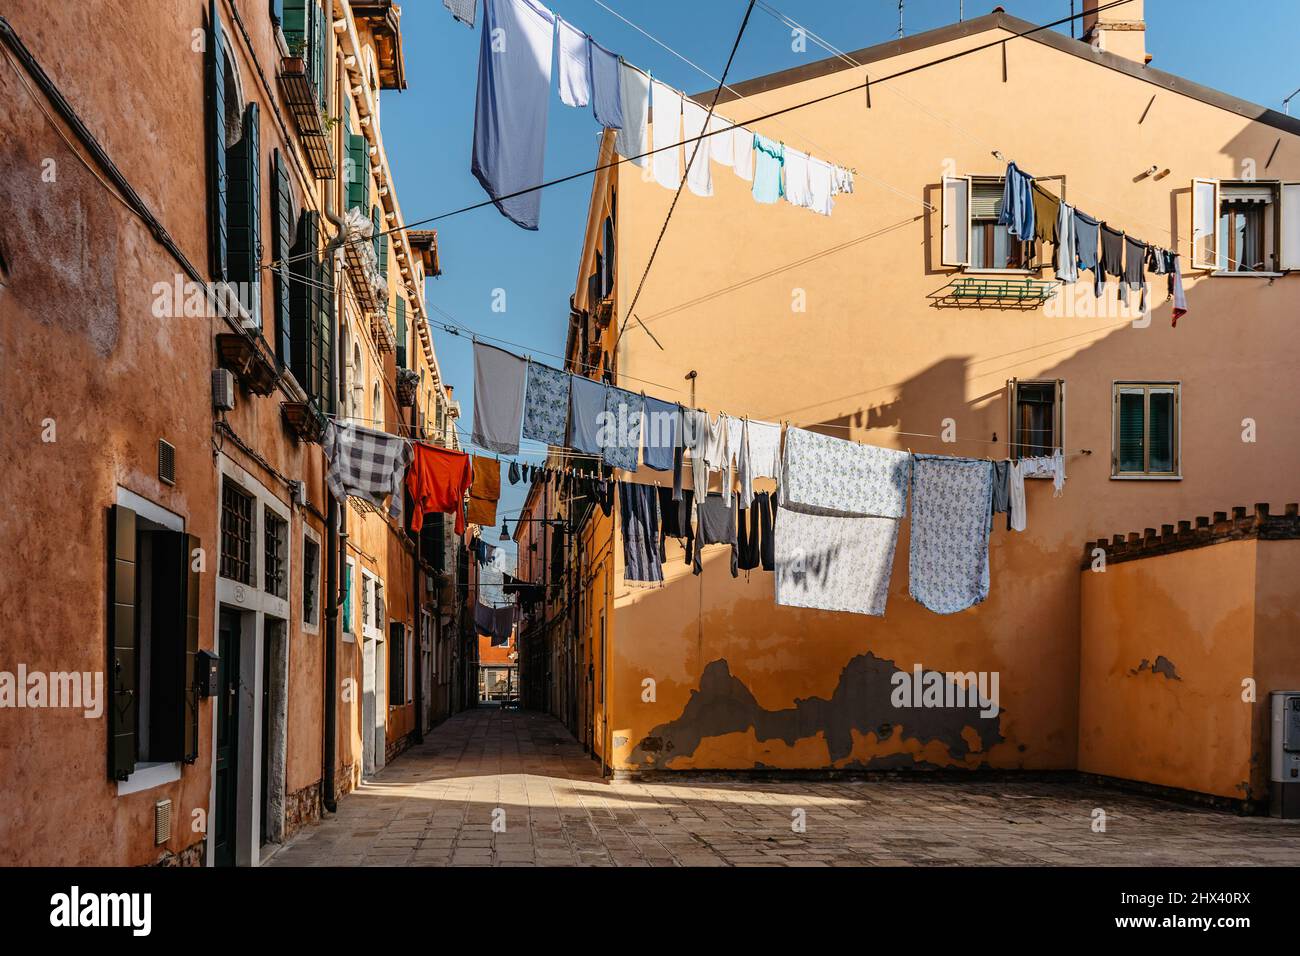 Wäsche hängt aus der typischen venezianischen Fassade, Italien. Enge Straße mit bunten Gebäuden und Kleidung trocken am Seil, Venedig. Saubere Kleidung trocknen im Freien Stockfoto